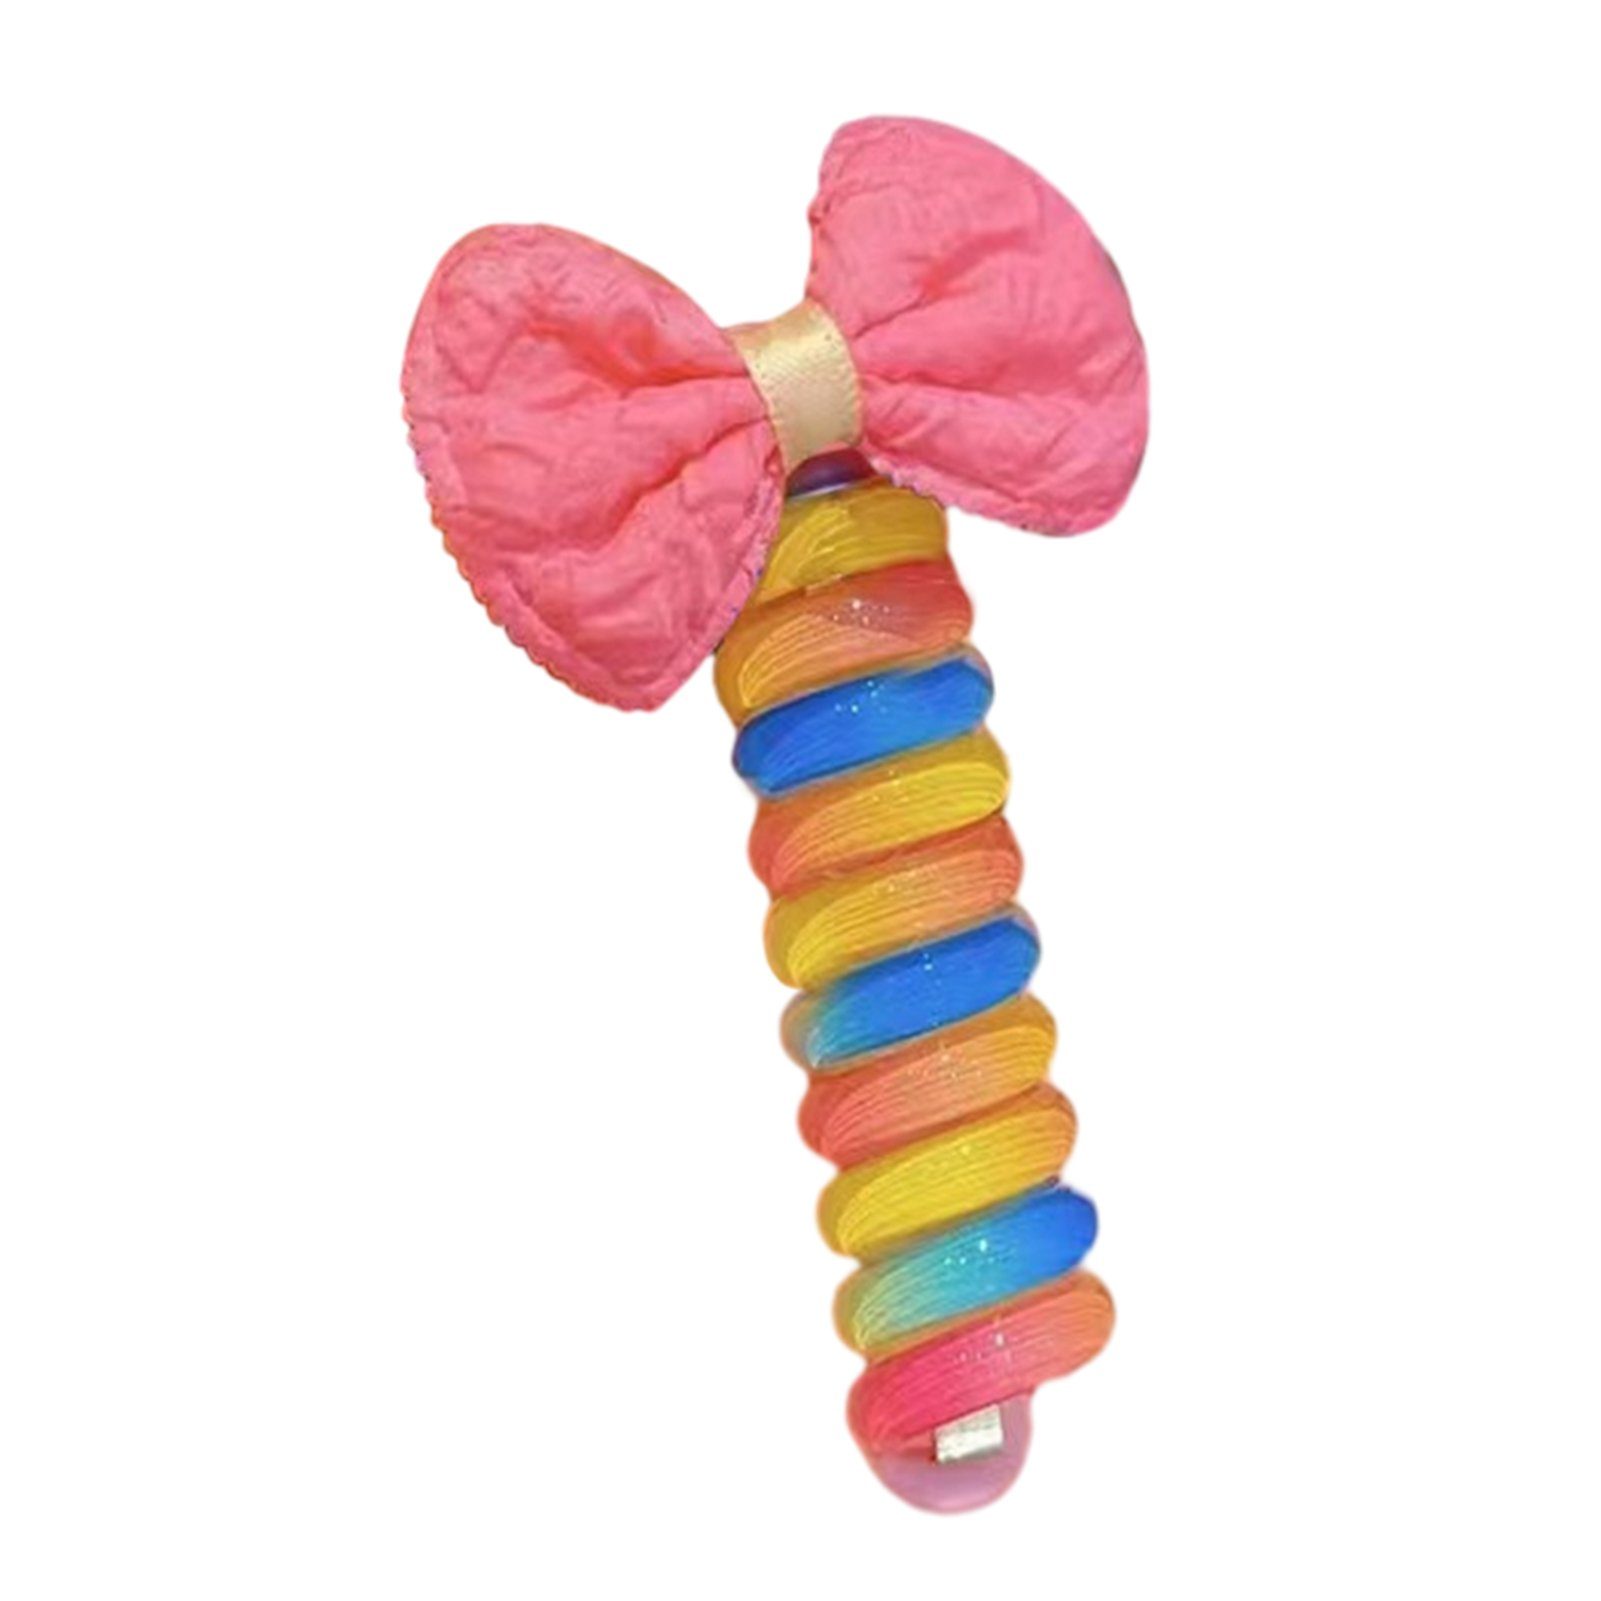 Wiederverwendbare Blusmart Bunte pink Spiral-Haargummi cloth Spiral-Haargummi bow Mädchen Haarbänder Telefonkabel Schleife DIY,